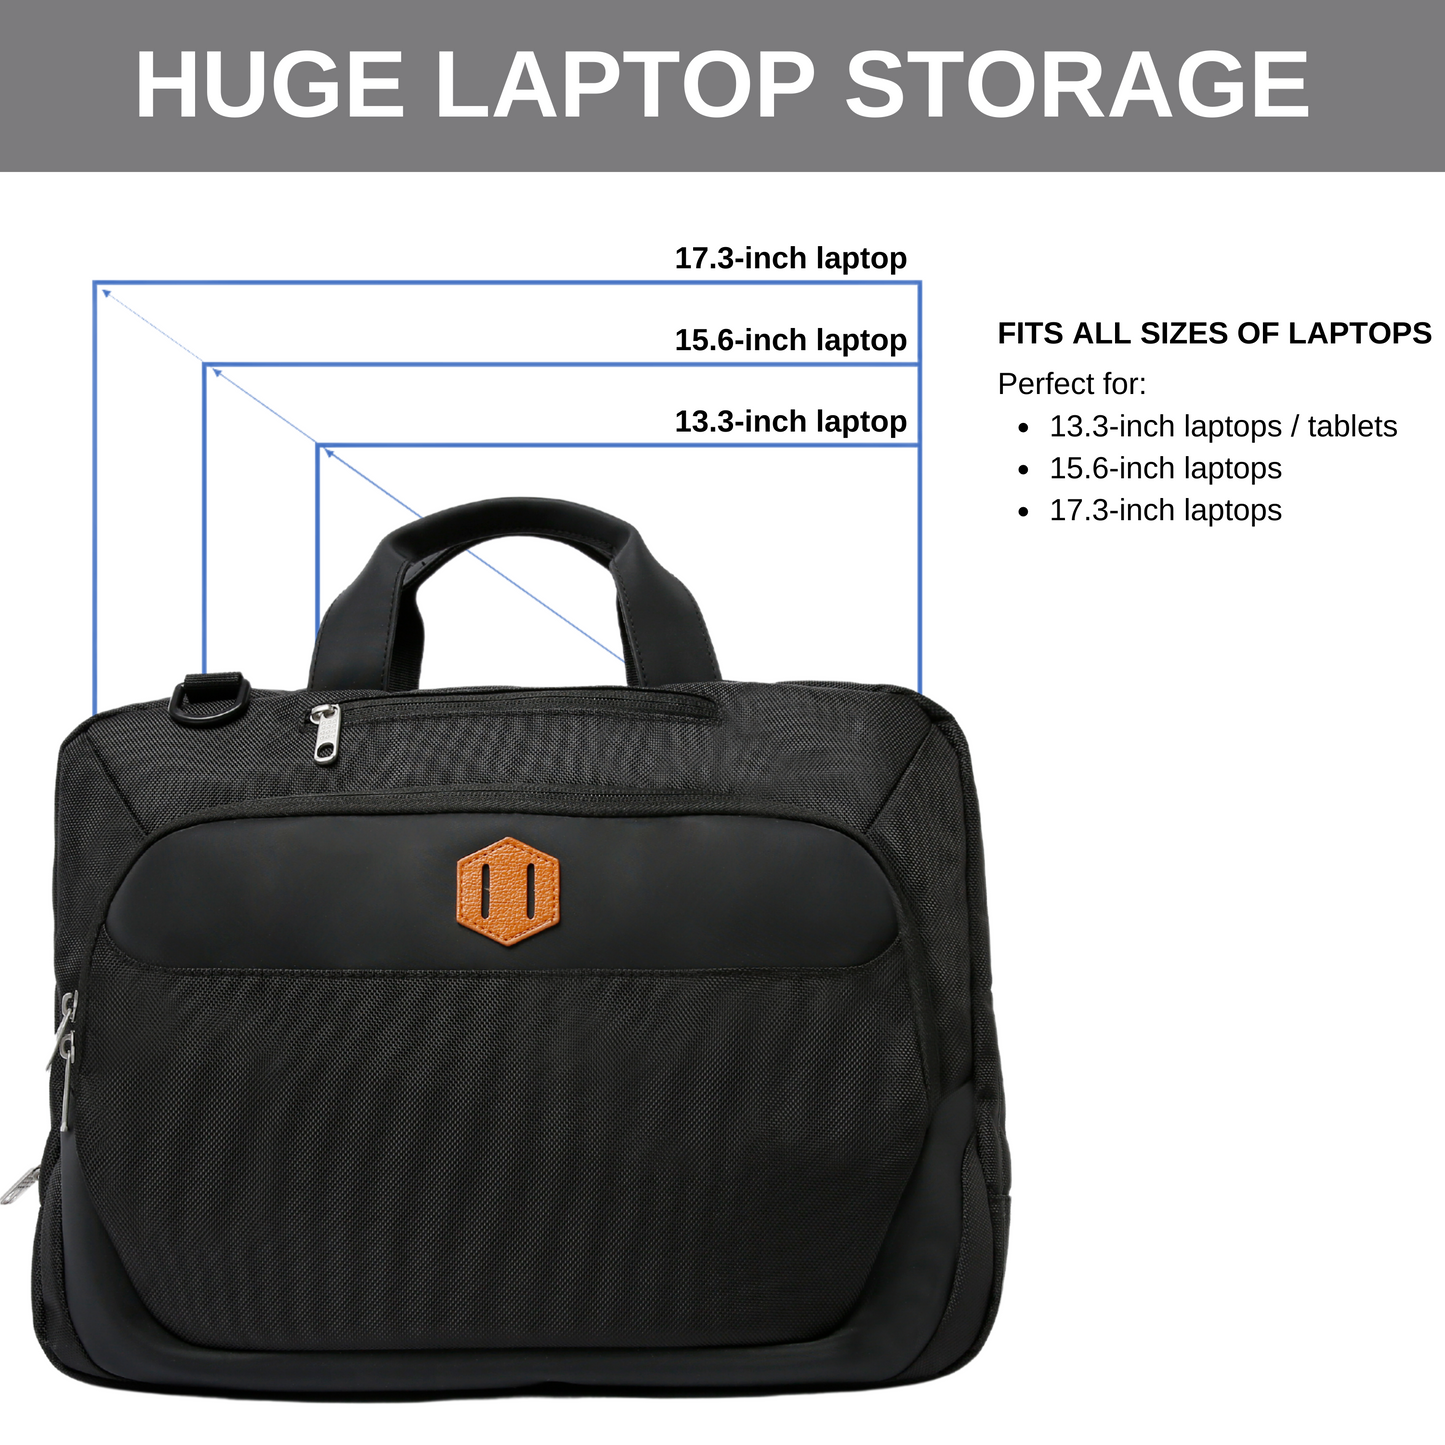 Signature Laptop Side Bag with Free Shoulder Strap